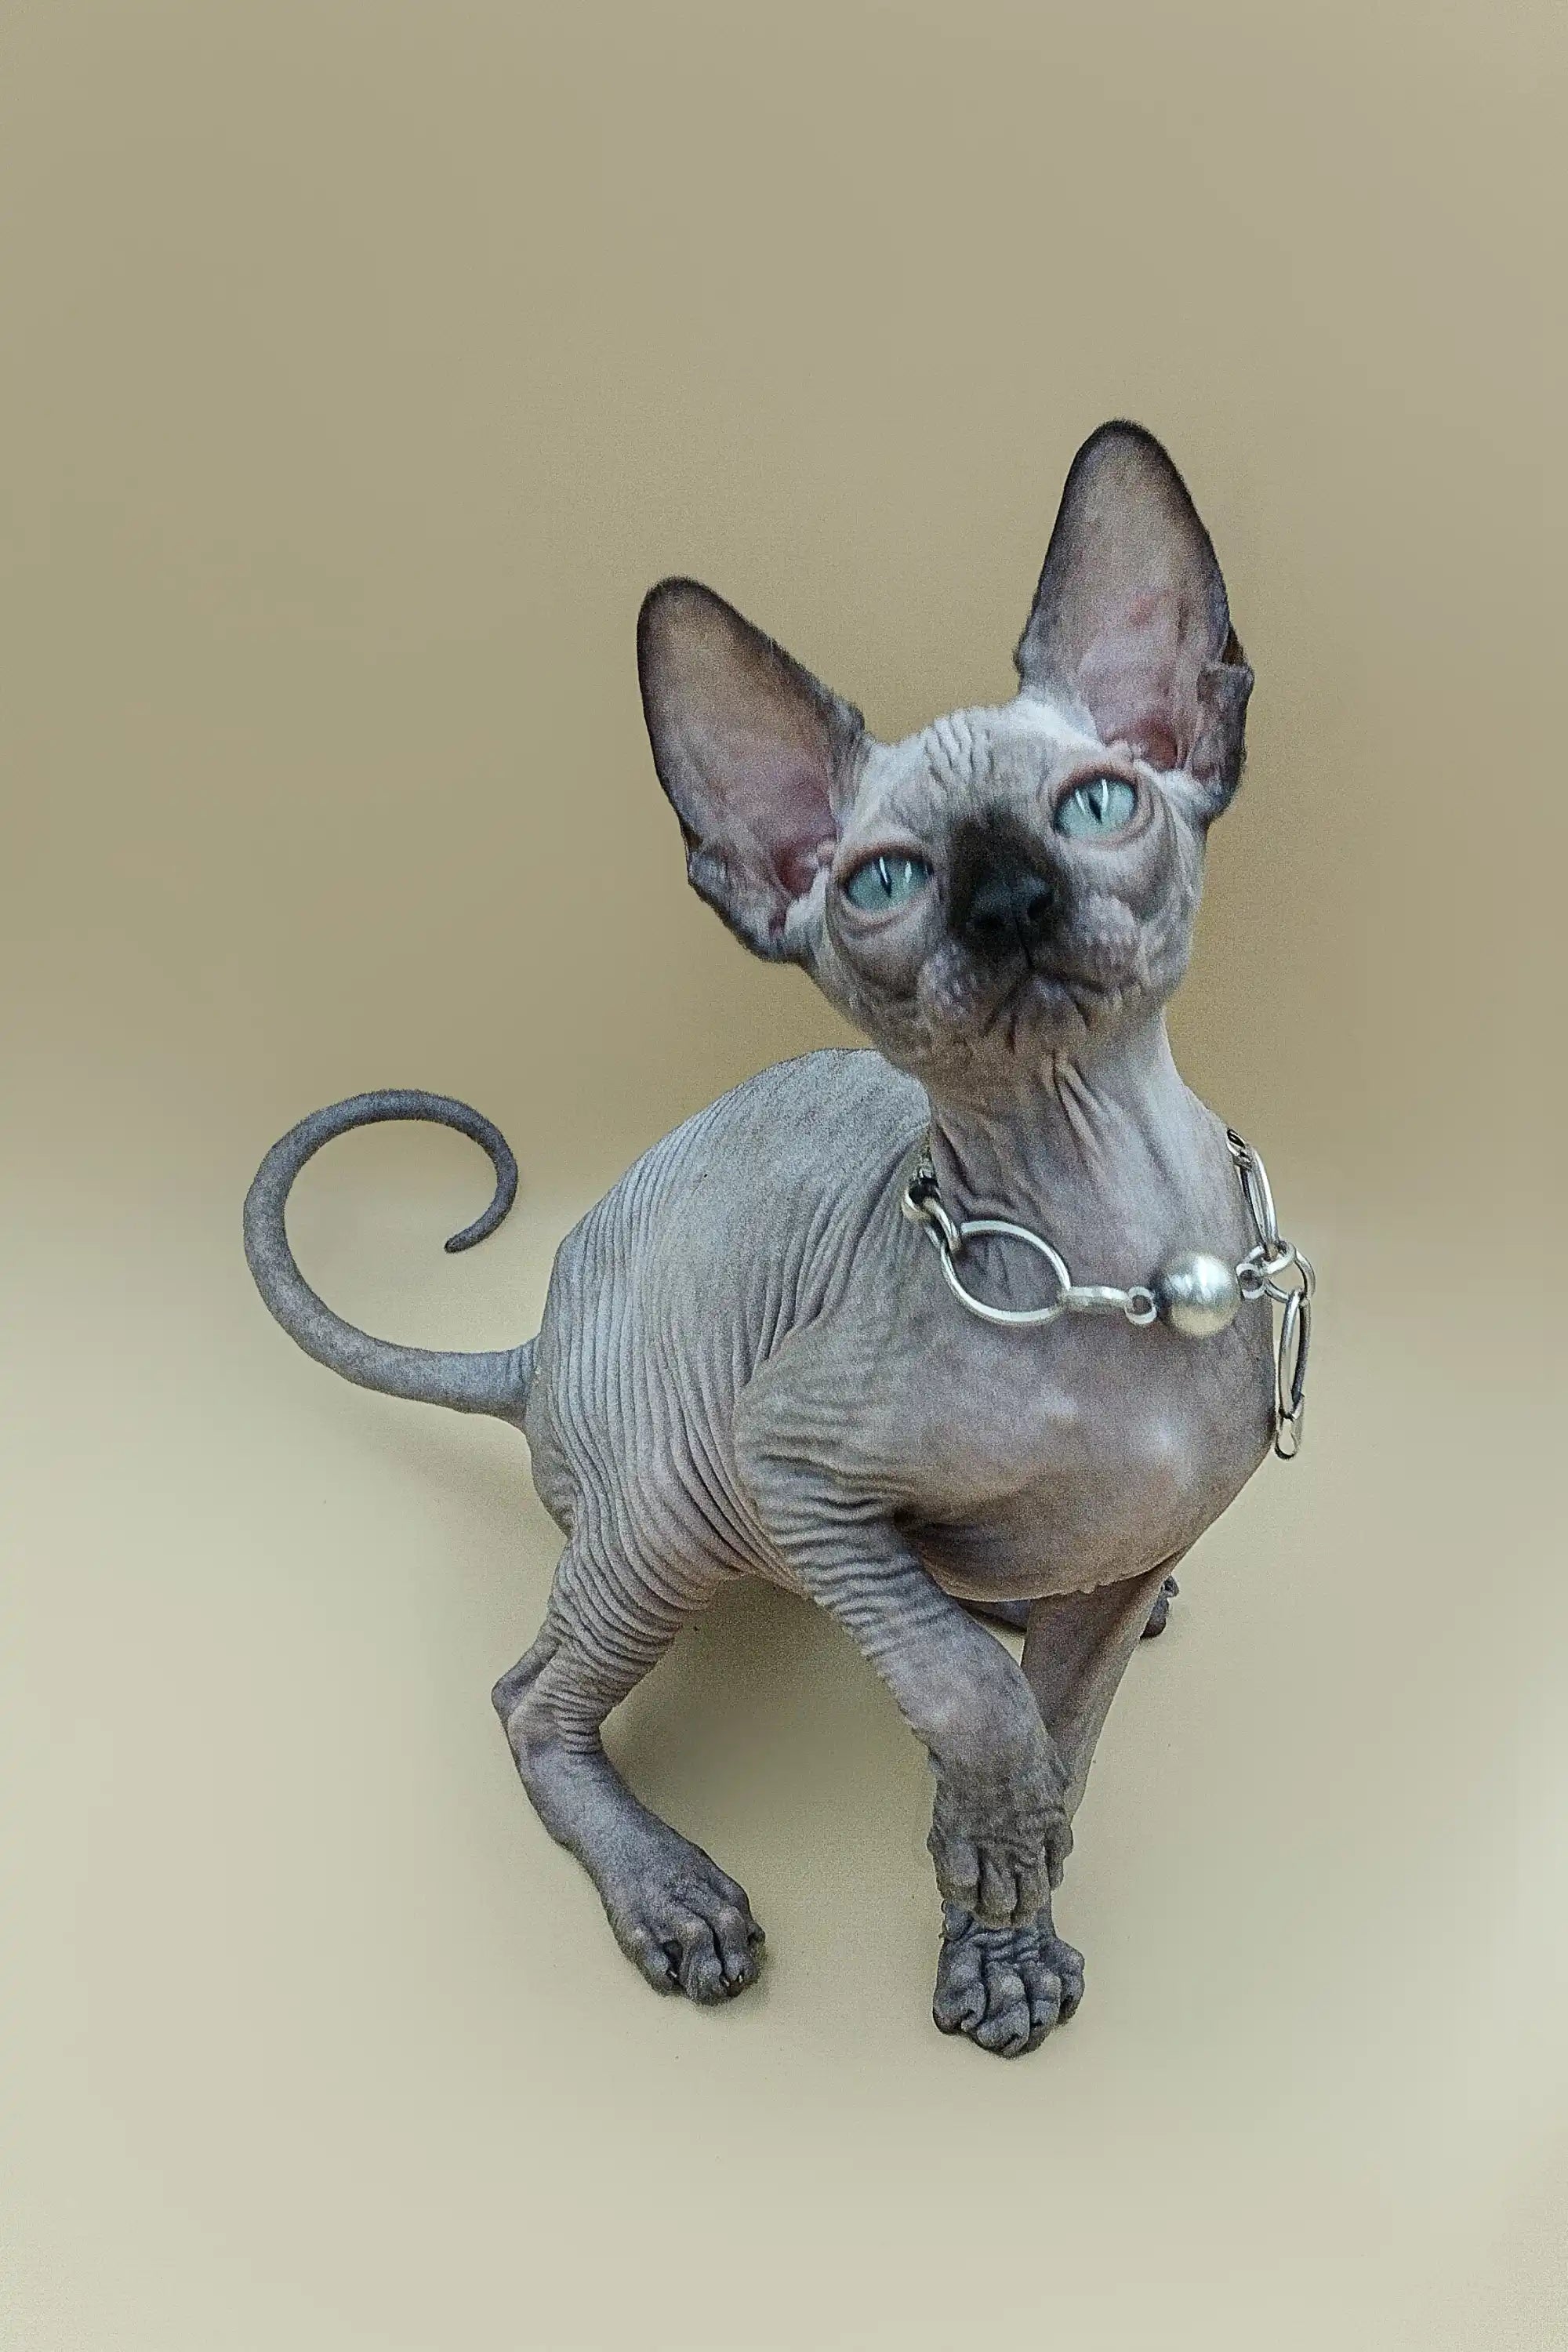 Sphynx Kittens for Sale Ilbert| Kitten